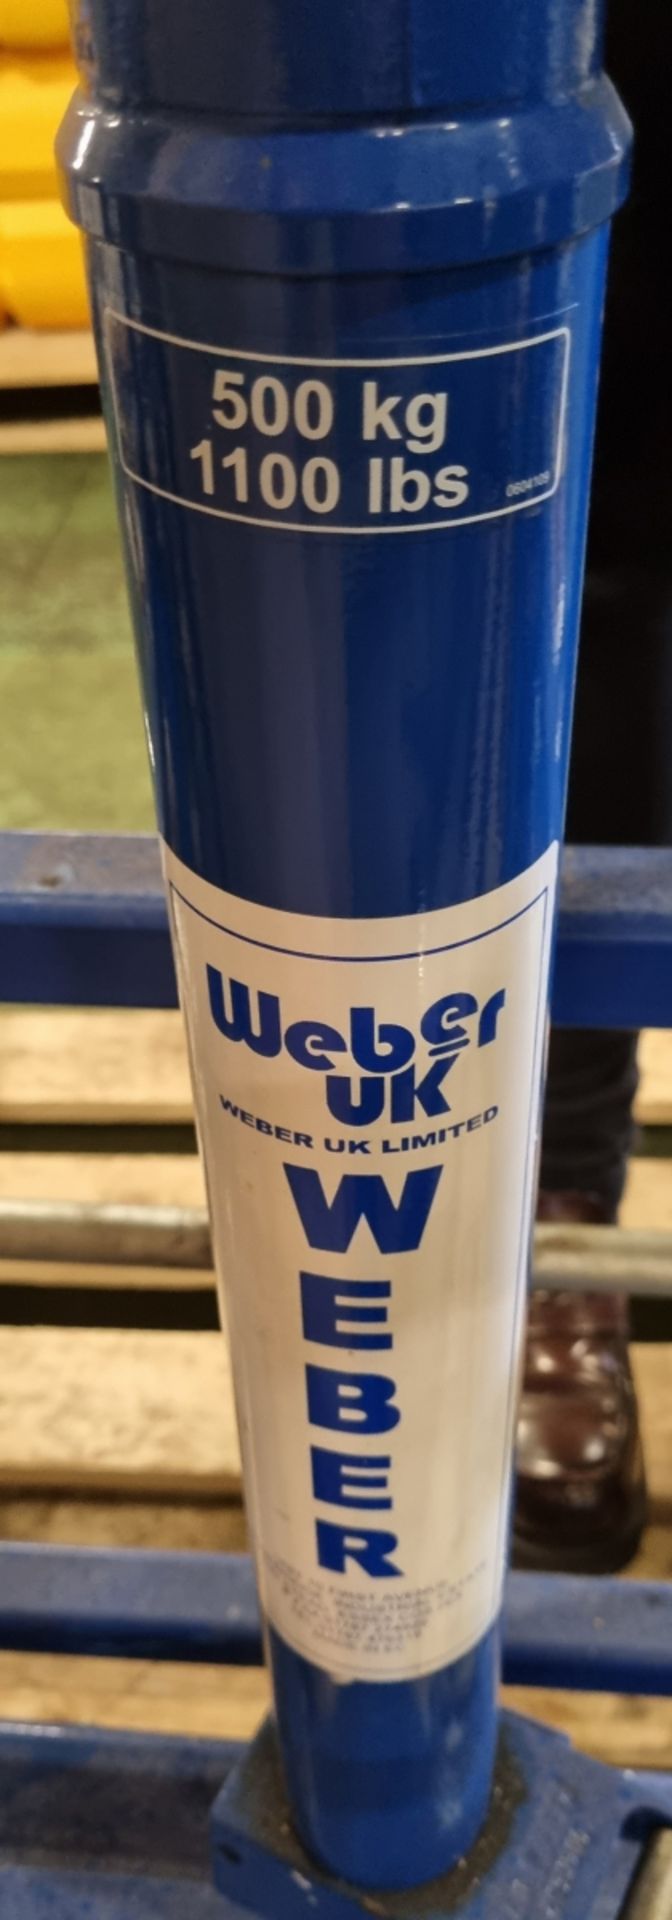 Weber UK WT500FLEX hydraulic wheel moving trolley - capacity: 500kg - Bild 5 aus 6